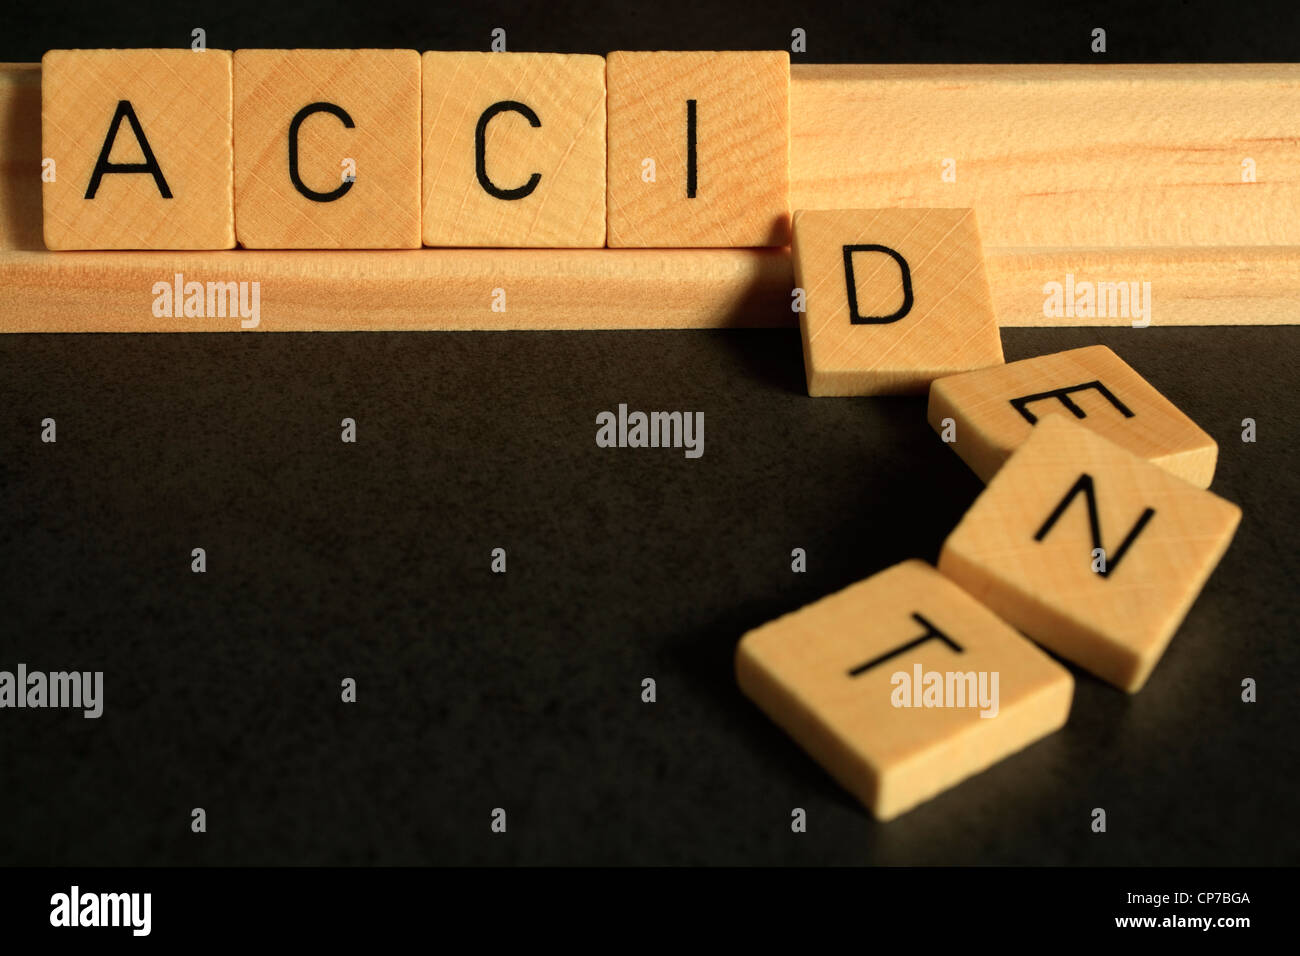 La palabra "accidente", puntualiza en el Scrabble las letras del abecedario, las letras DENT han caído a lo largo de Foto de stock